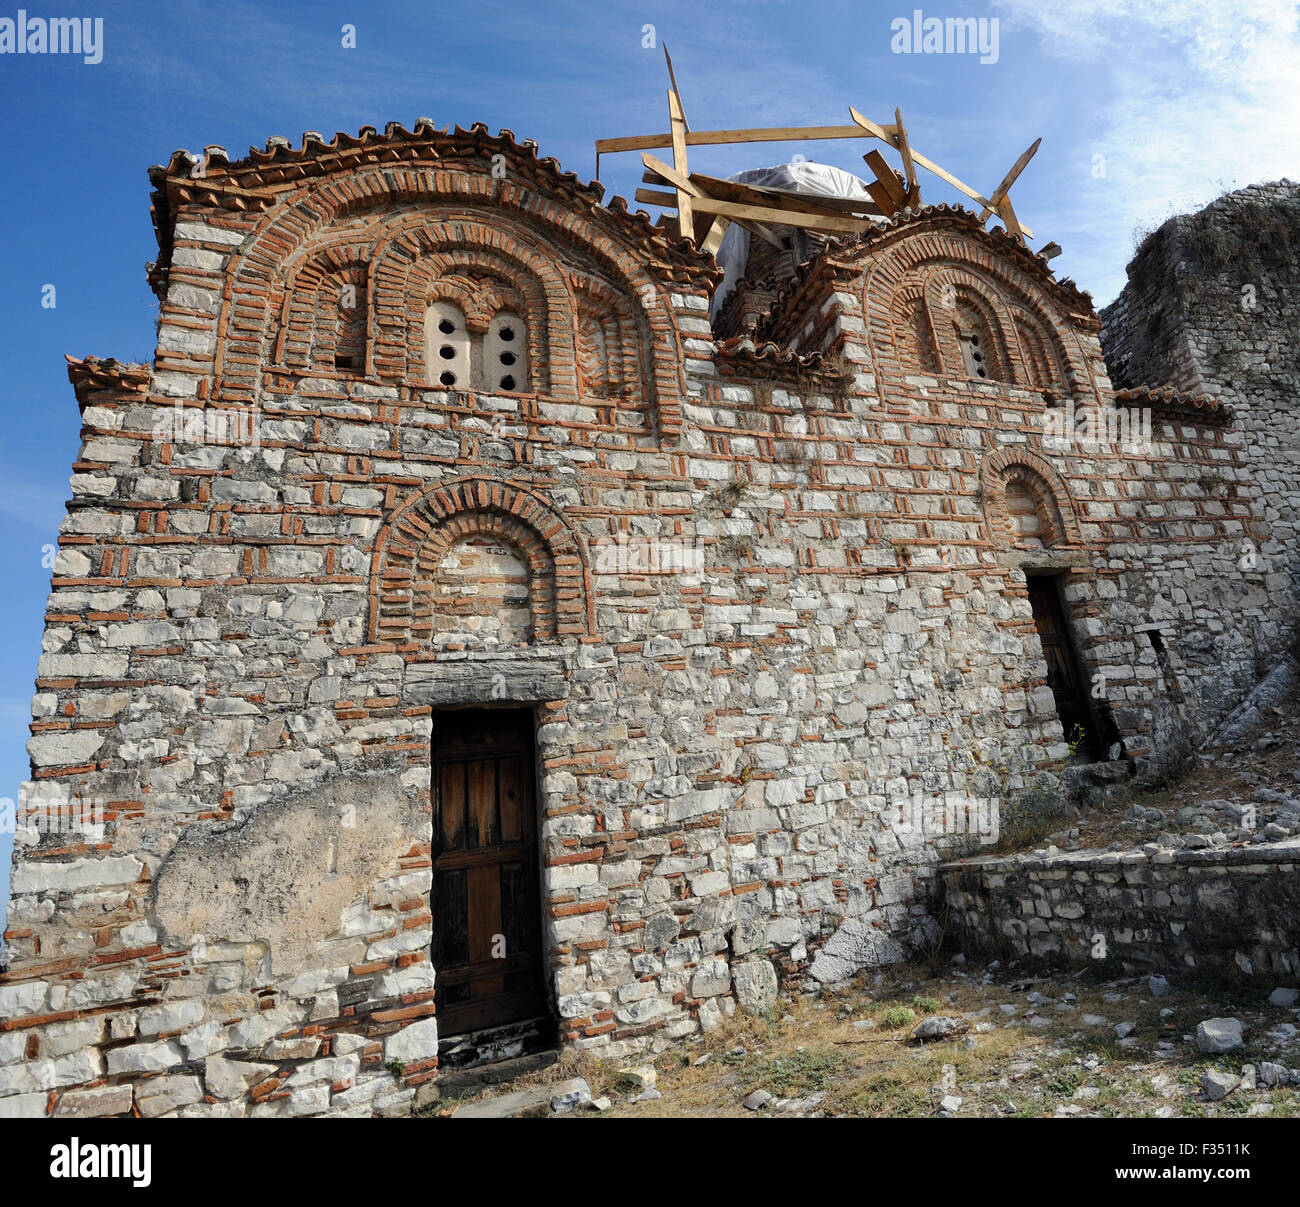 La Chiesa della Santa Trinità, un palazzo del XIV secolo della chiesa ortodossa a le mura del XIII secolo il castello di Berat, Kalaja e Beratit. Foto Stock